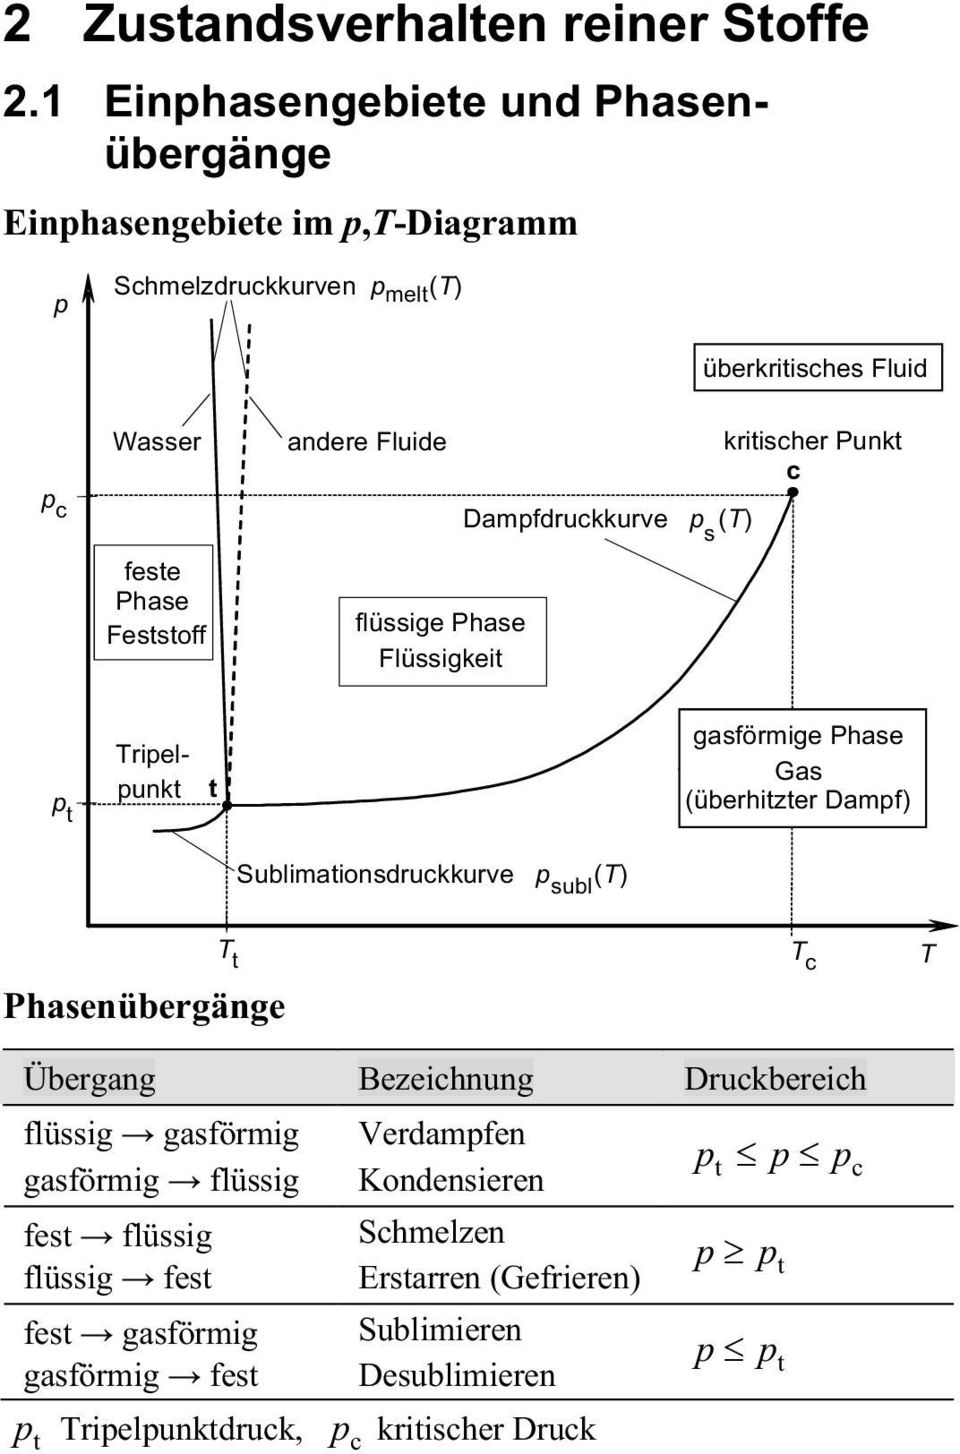 c feste Phase Feststoff flüssige Phase Flüssigkeit Dampfdruckkurve p (T) s p t Tripelpunkt t gasförmige Phase Gas (überhitzter Dampf) Phasenübergänge